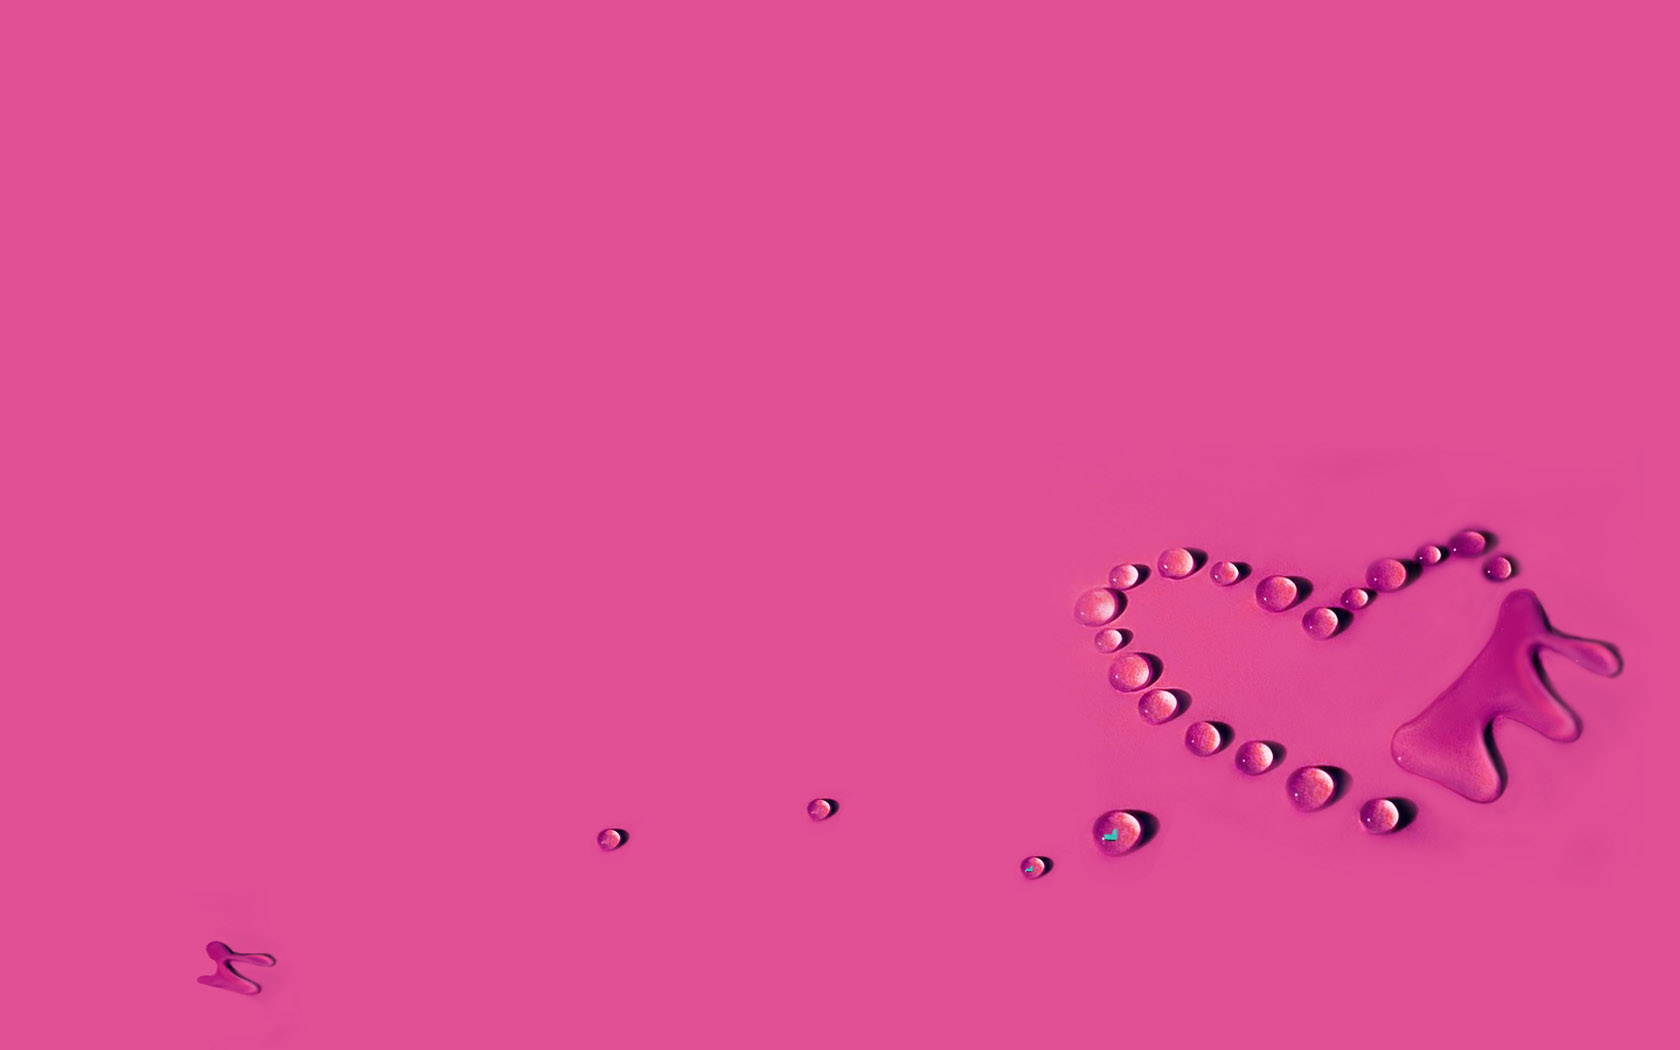 Water drop love desktop wallpaper